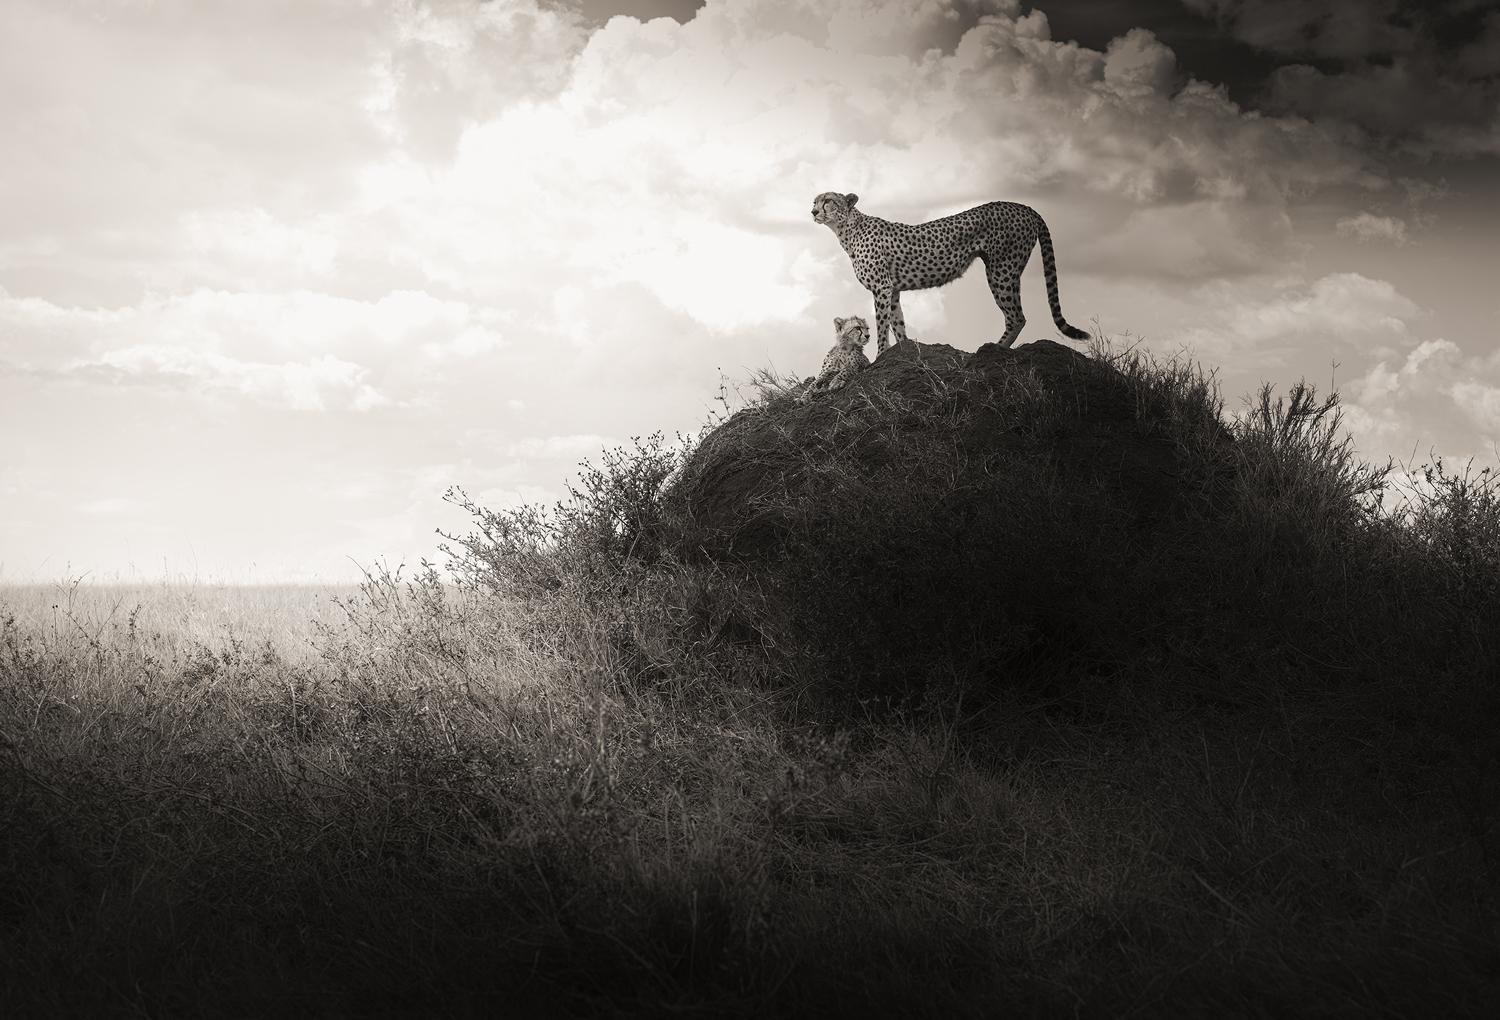 Joachim Schmeisser Black and White Photograph – Lean on Me, zeitgenössisch, Schwarz-Weiß, Tier, Afrika, Fotografie, Cheetah